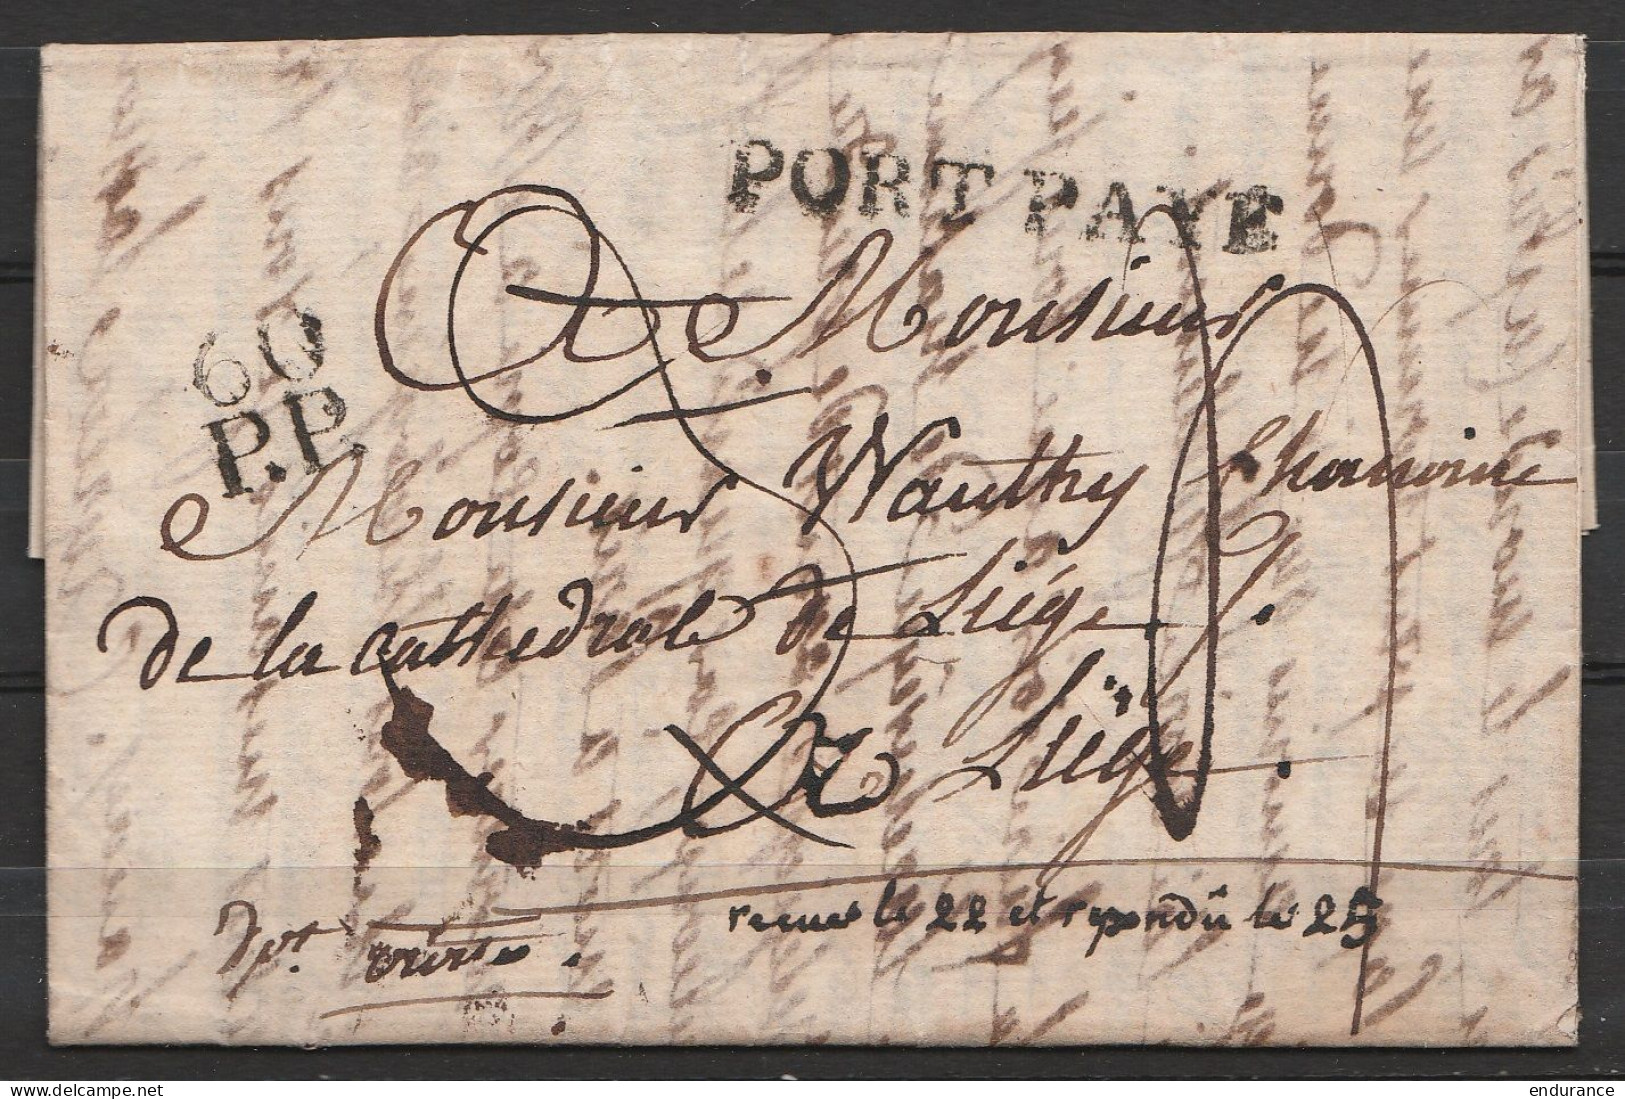 L. Datée 18 Août 1814 Signée De L'Evêque De Liège à PARIS Pour Chanoine De La Cathédrale De Liège - Griffe "PORT PAYE" + - 1794-1814 (Franse Tijd)